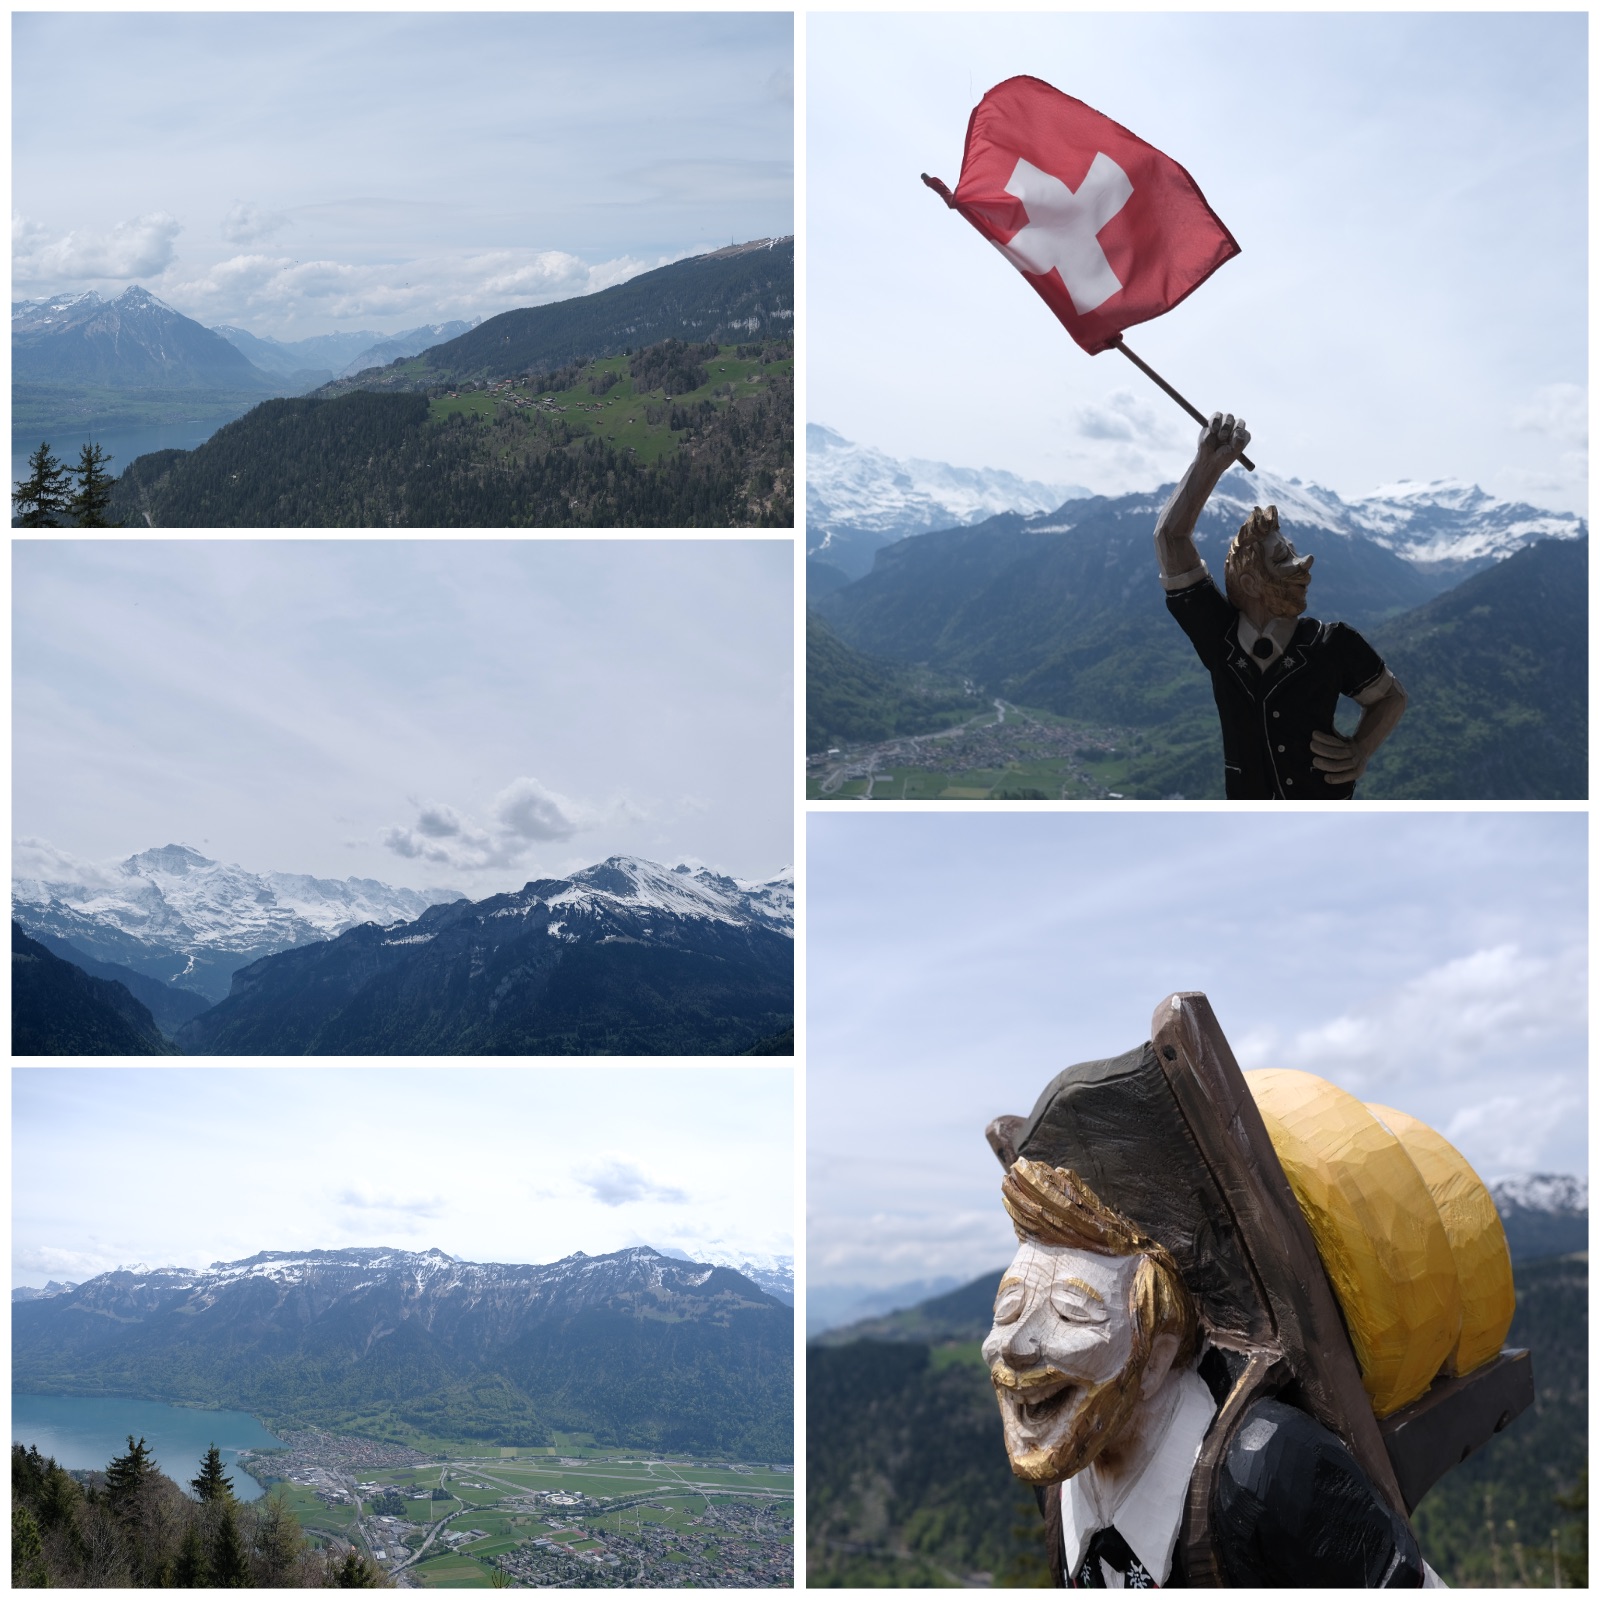 五张图片构成的拼图，左上、左中、左下分别是不同角度的山色远景，能看到白云下的雪山、山半腰平地上的村落、还有山脚下的大片湖泊和城镇；右上和右下是两个木雕小人，一个举着瑞士国旗望向远方，另一个背着两块奶酪块开怀大笑。